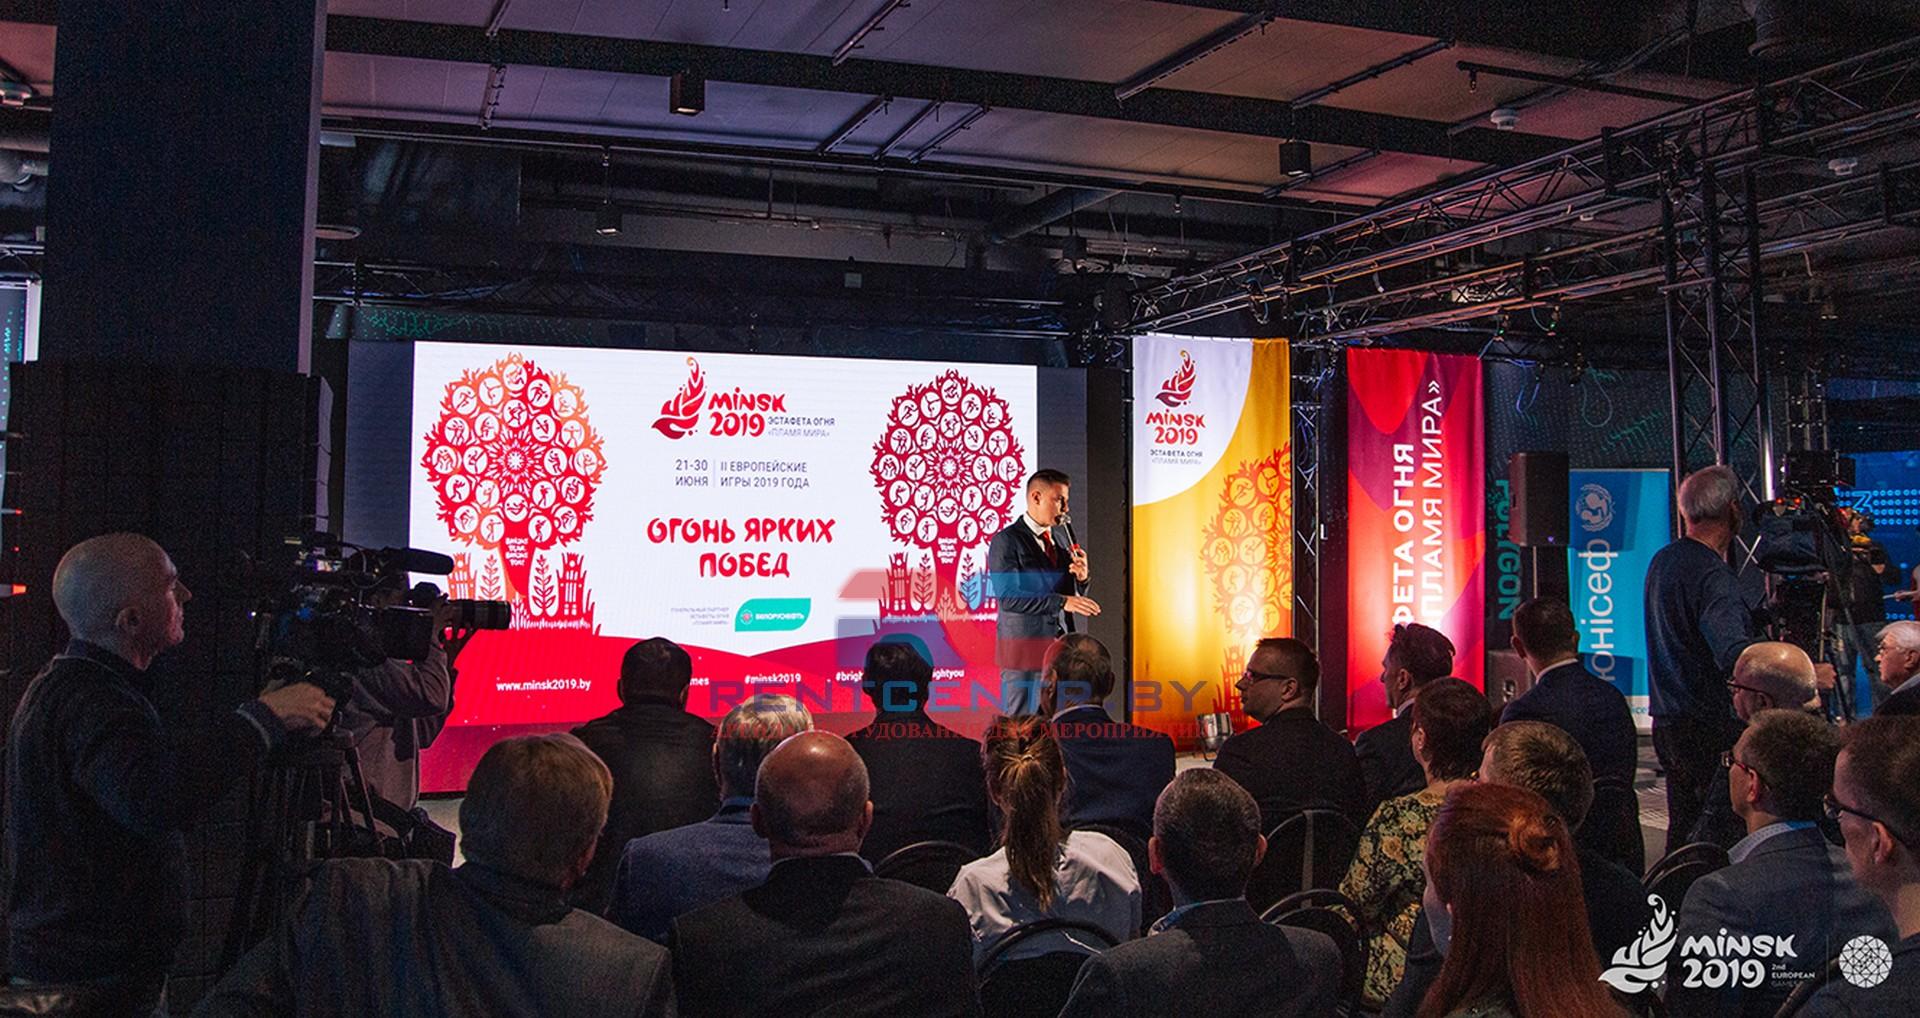 Презентация эстафеты Пламя мира II Европейских игр состоялась в Минске 2019